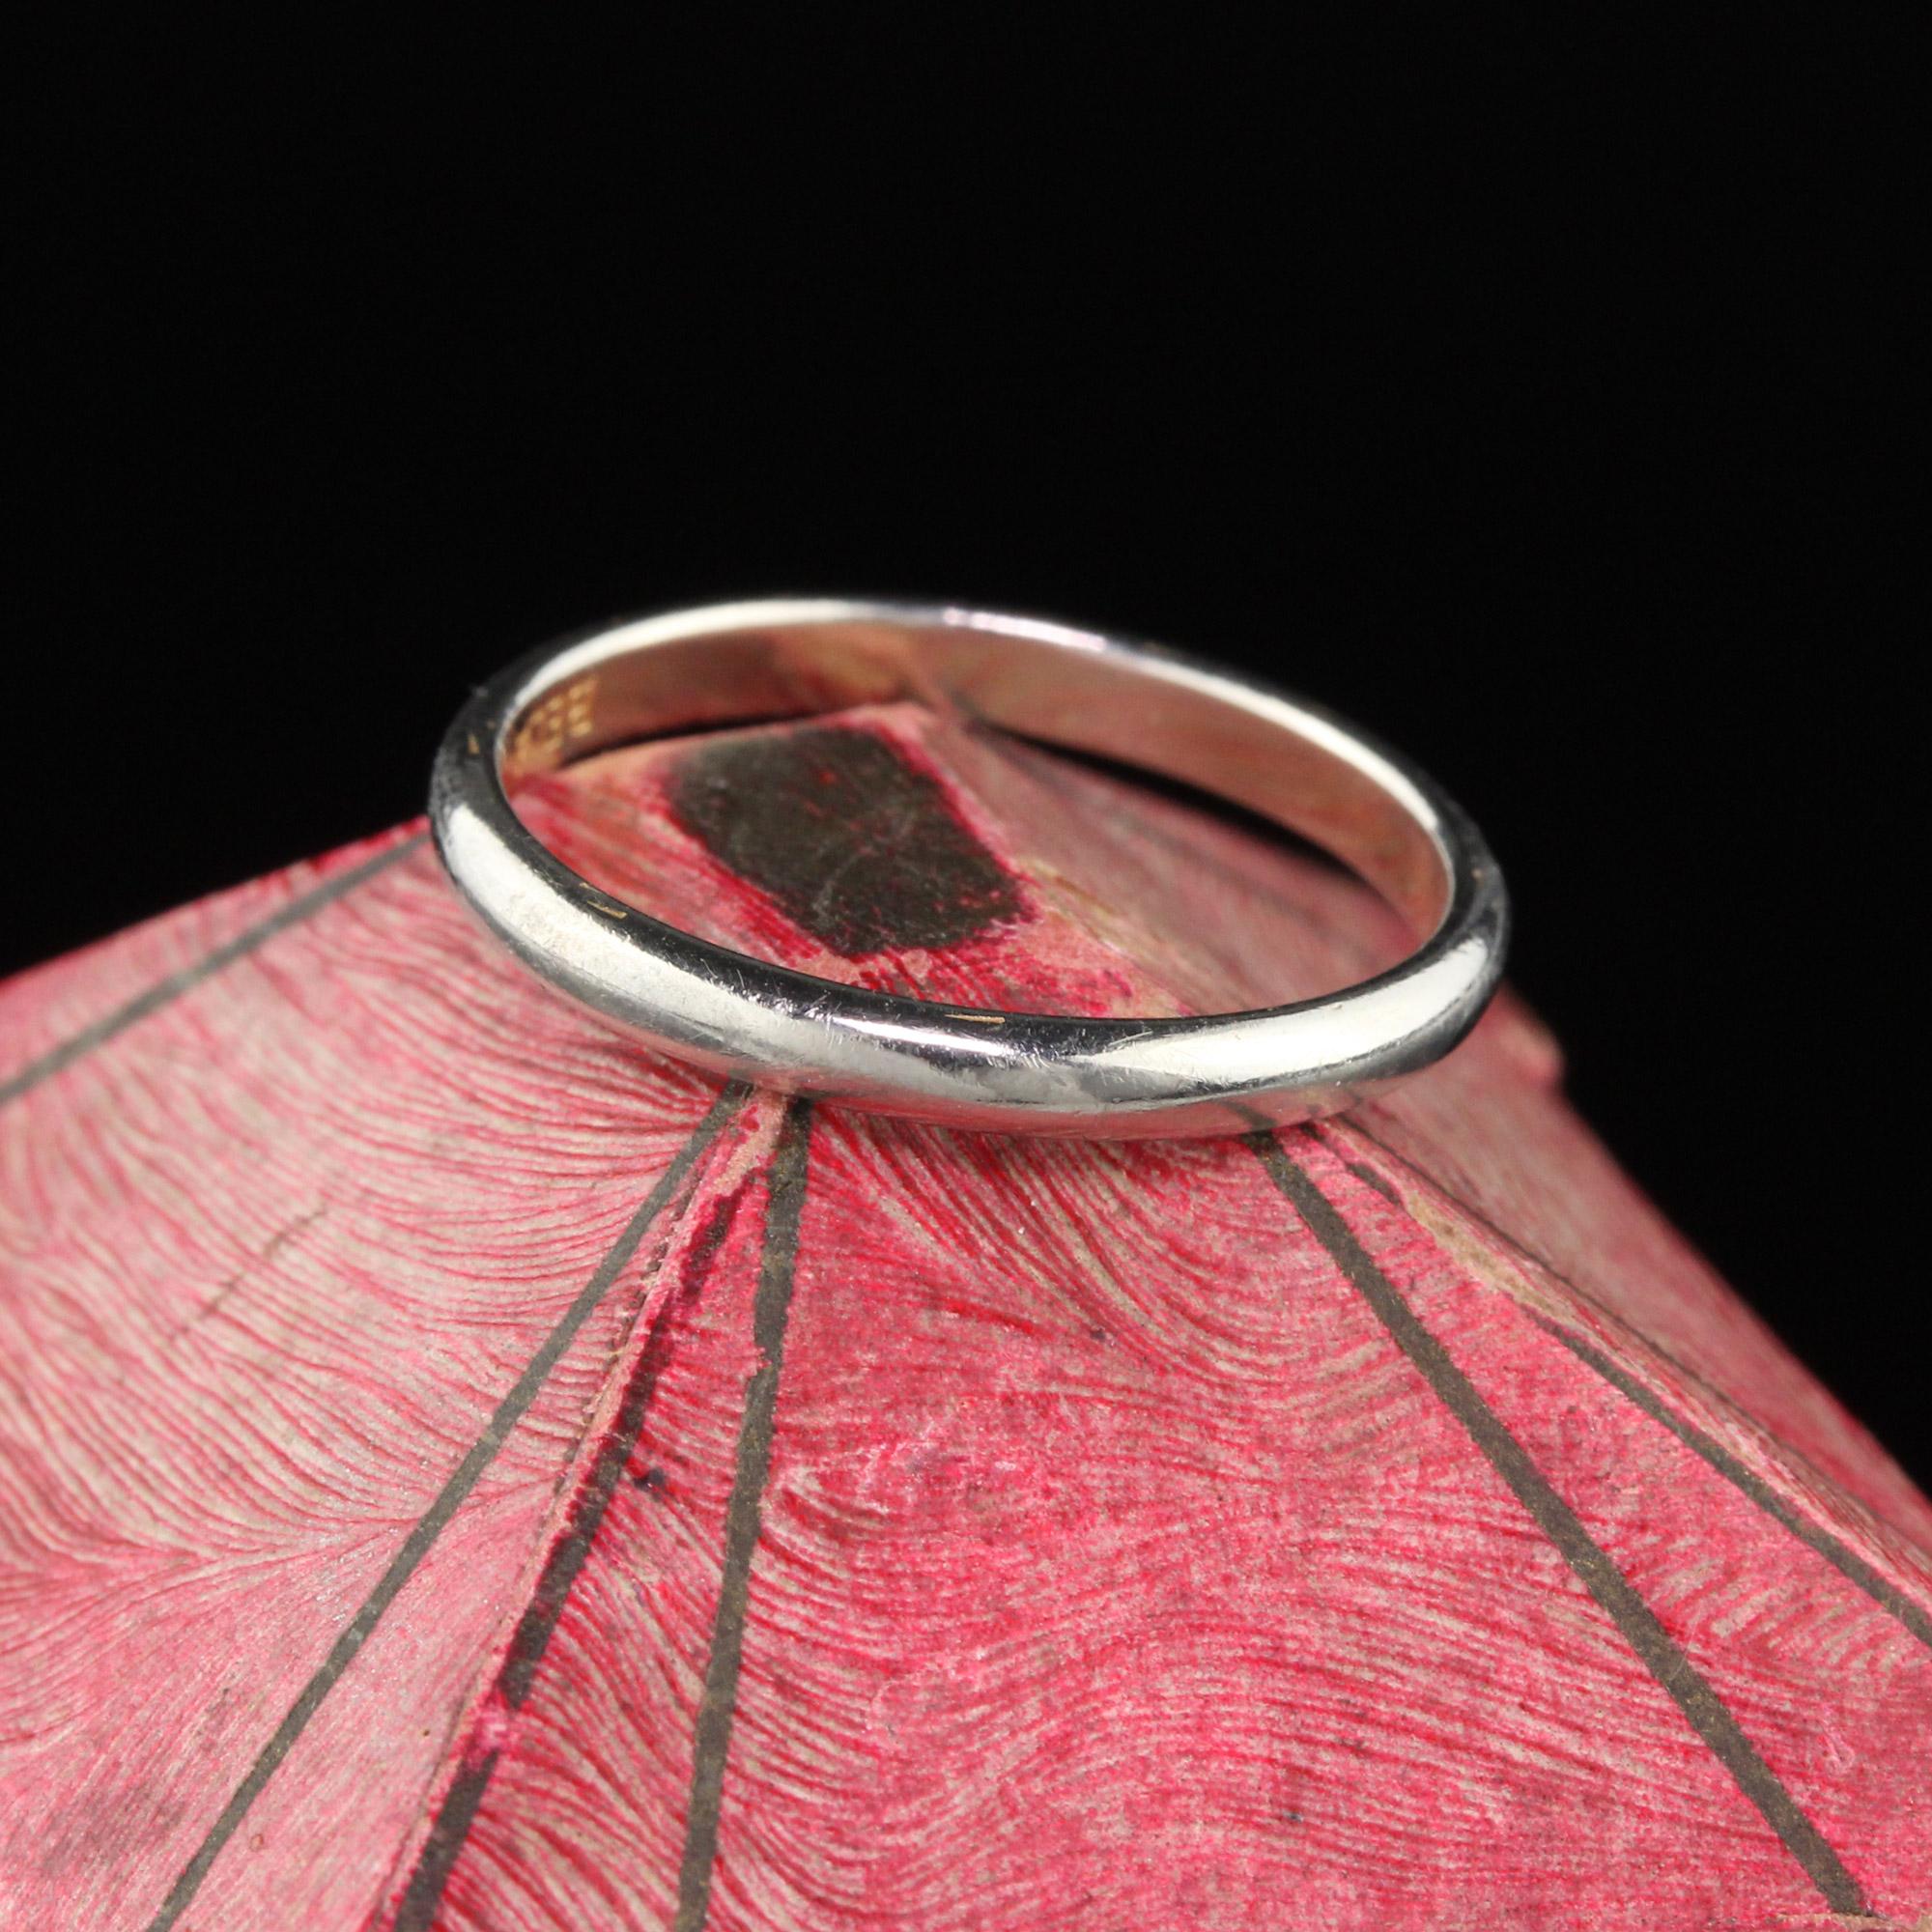 Ein perfektes Art Deco Hochzeitsband, sehr einfach und perfekt zum Stapeln. 

#R0358

Metall: 18K Weißgold

Gewicht: 2,1 Gramm

Ringgröße: 6 1/2

Dieser Ring kann gegen eine Gebühr von $50 in der Größe angepasst werden!

*Bitte beachten Sie, dass